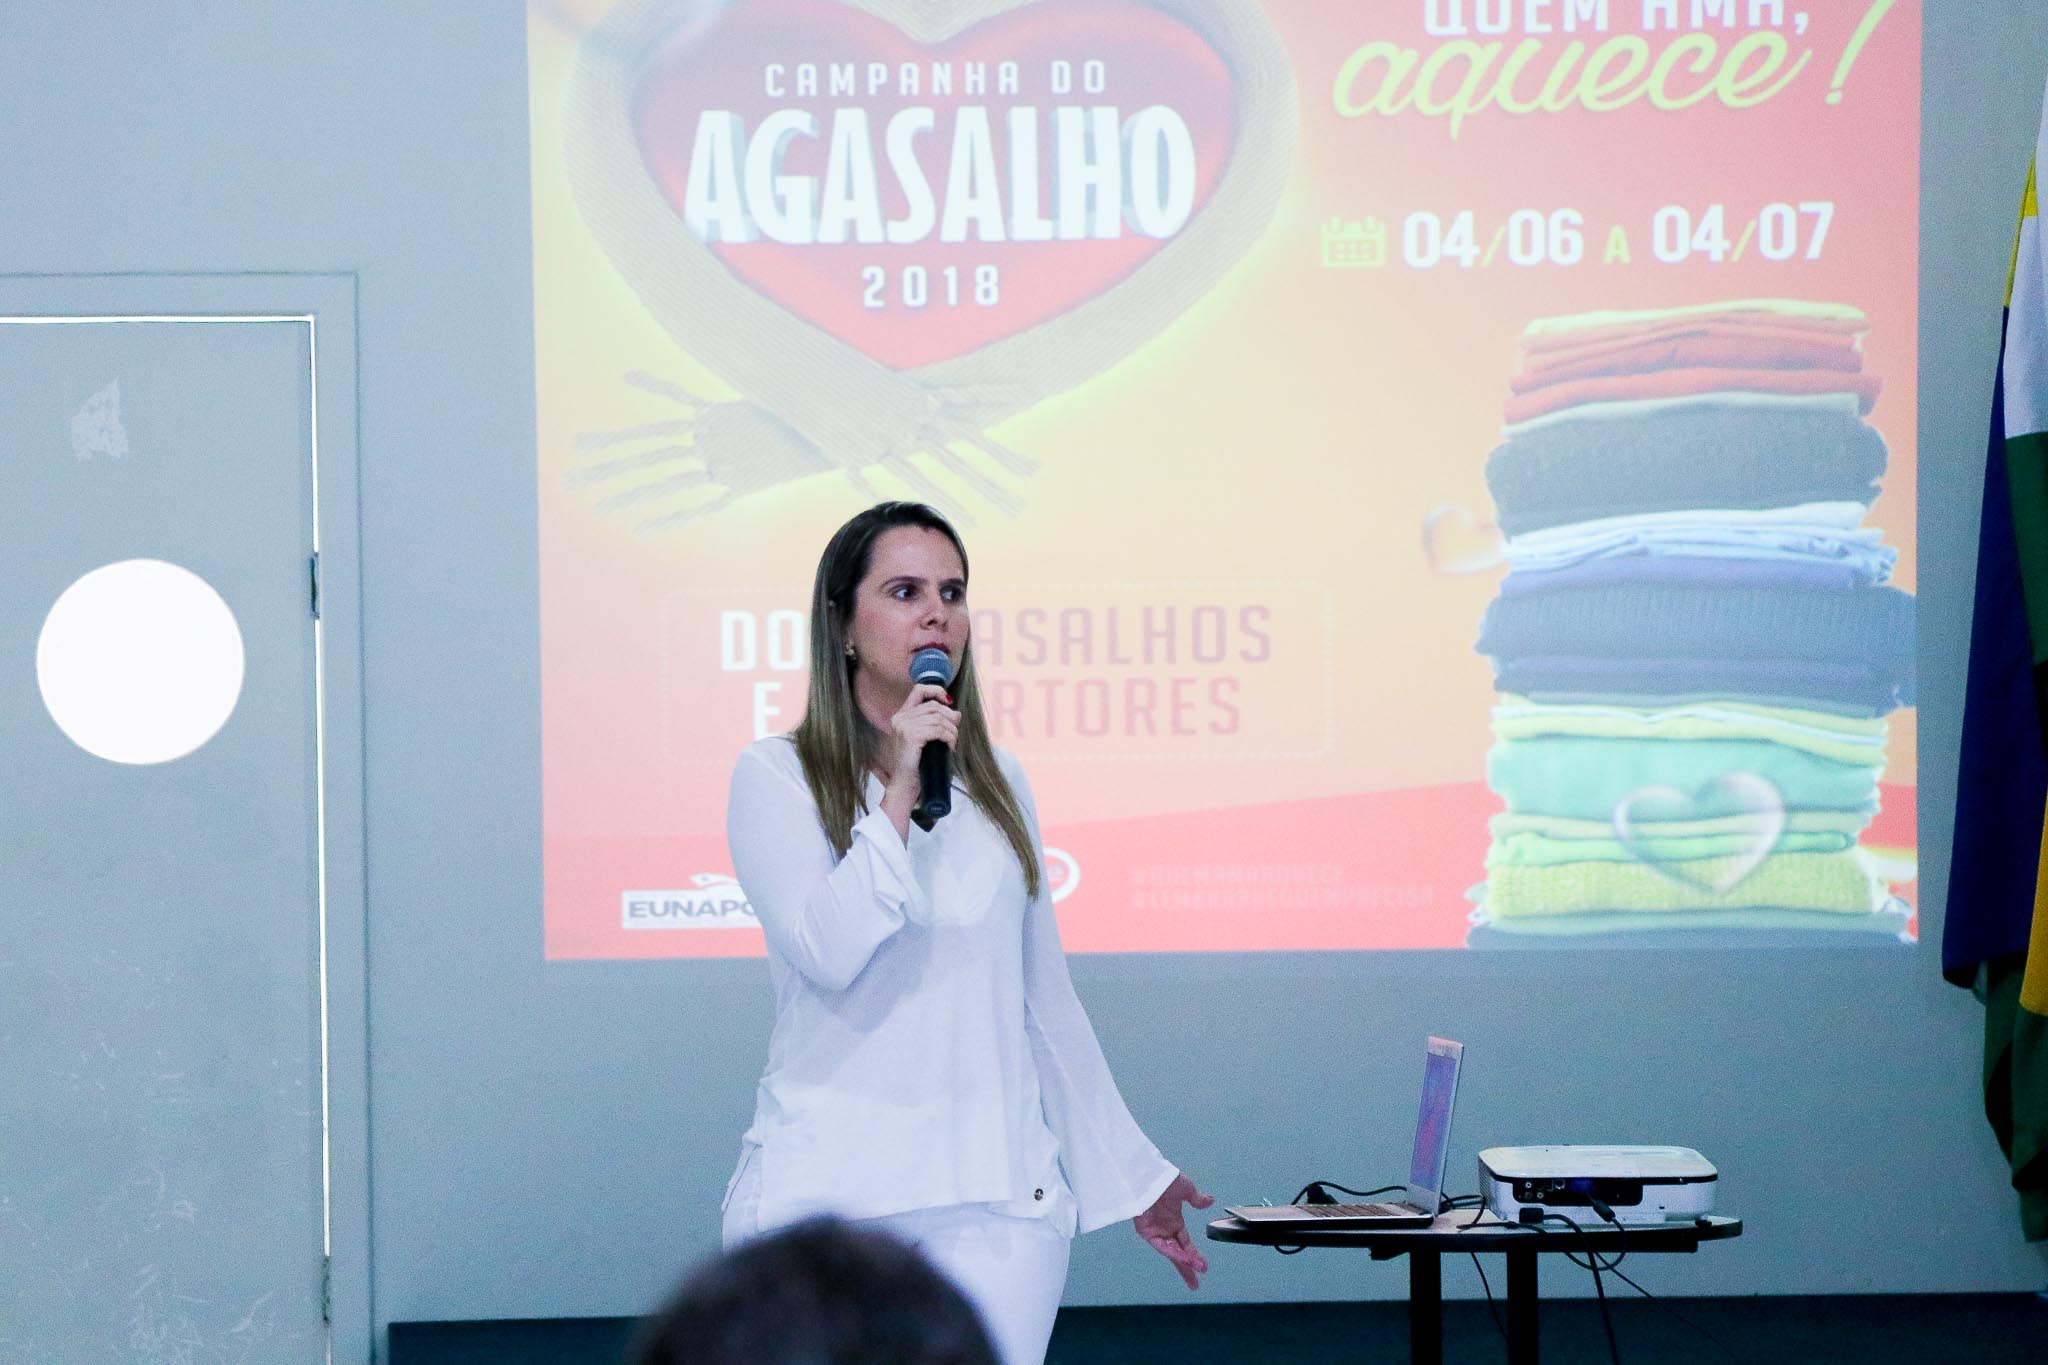 Assistência Social lança Campanha do Agasalho 2018 em Eunápolis 5